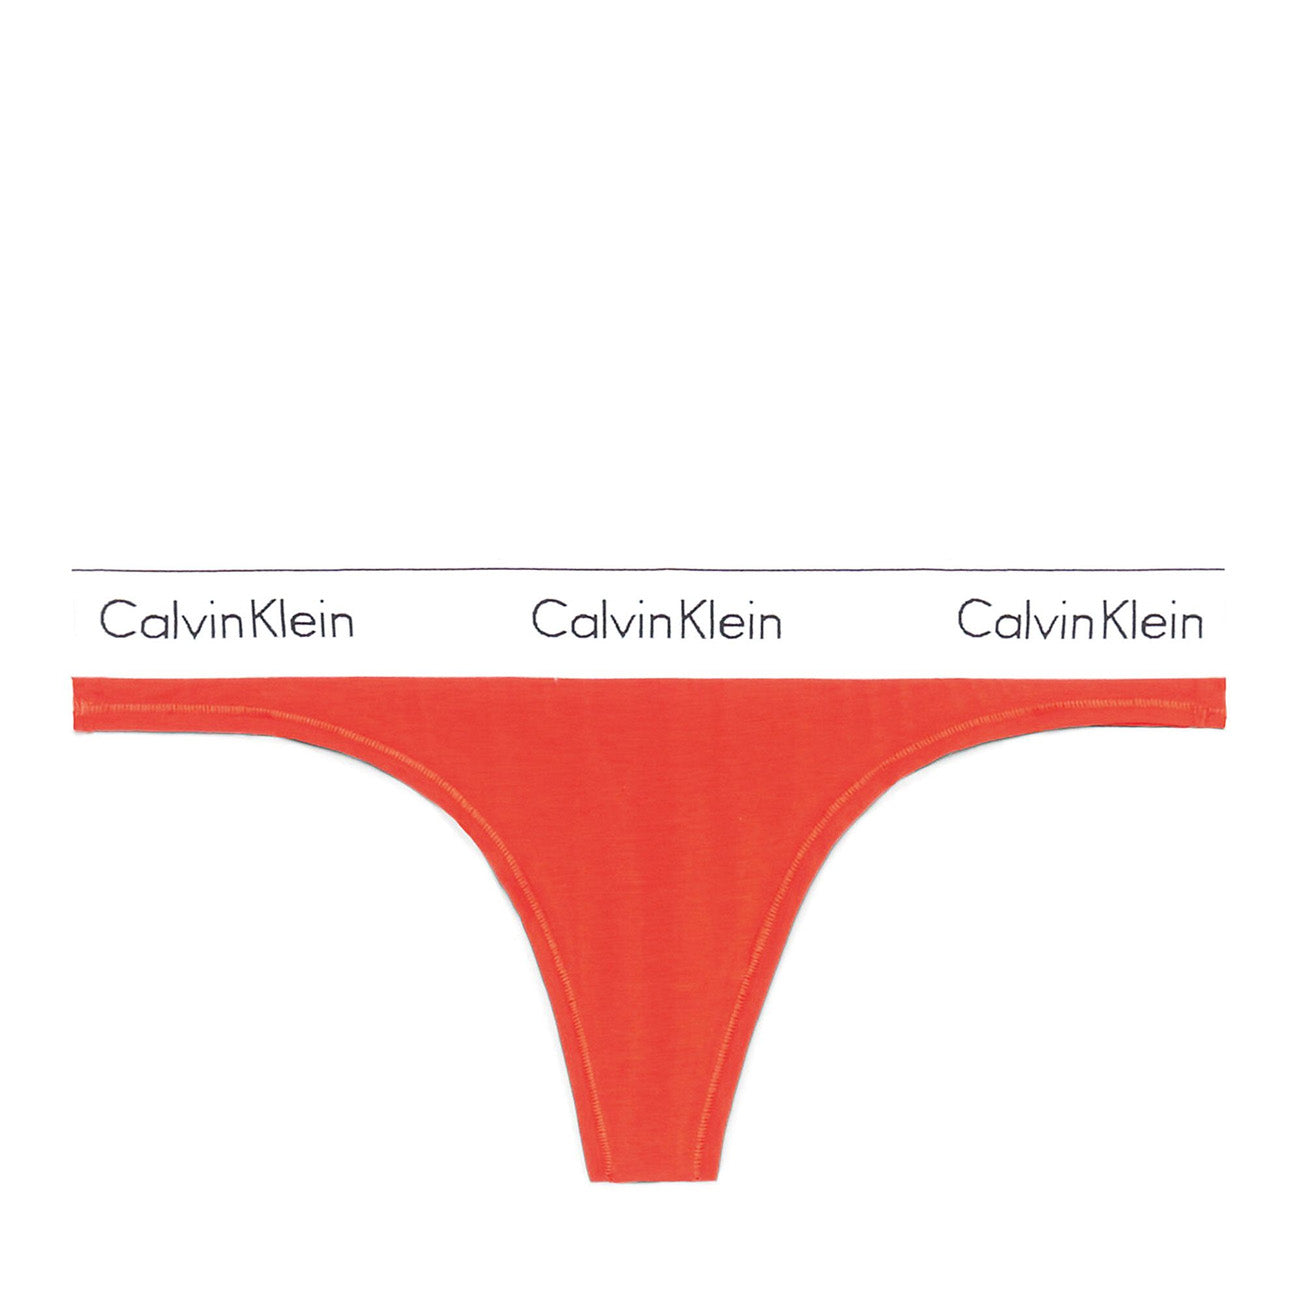 Calvin Klein Thong Schuhdealer String Orange – Spicy Modern Cotton